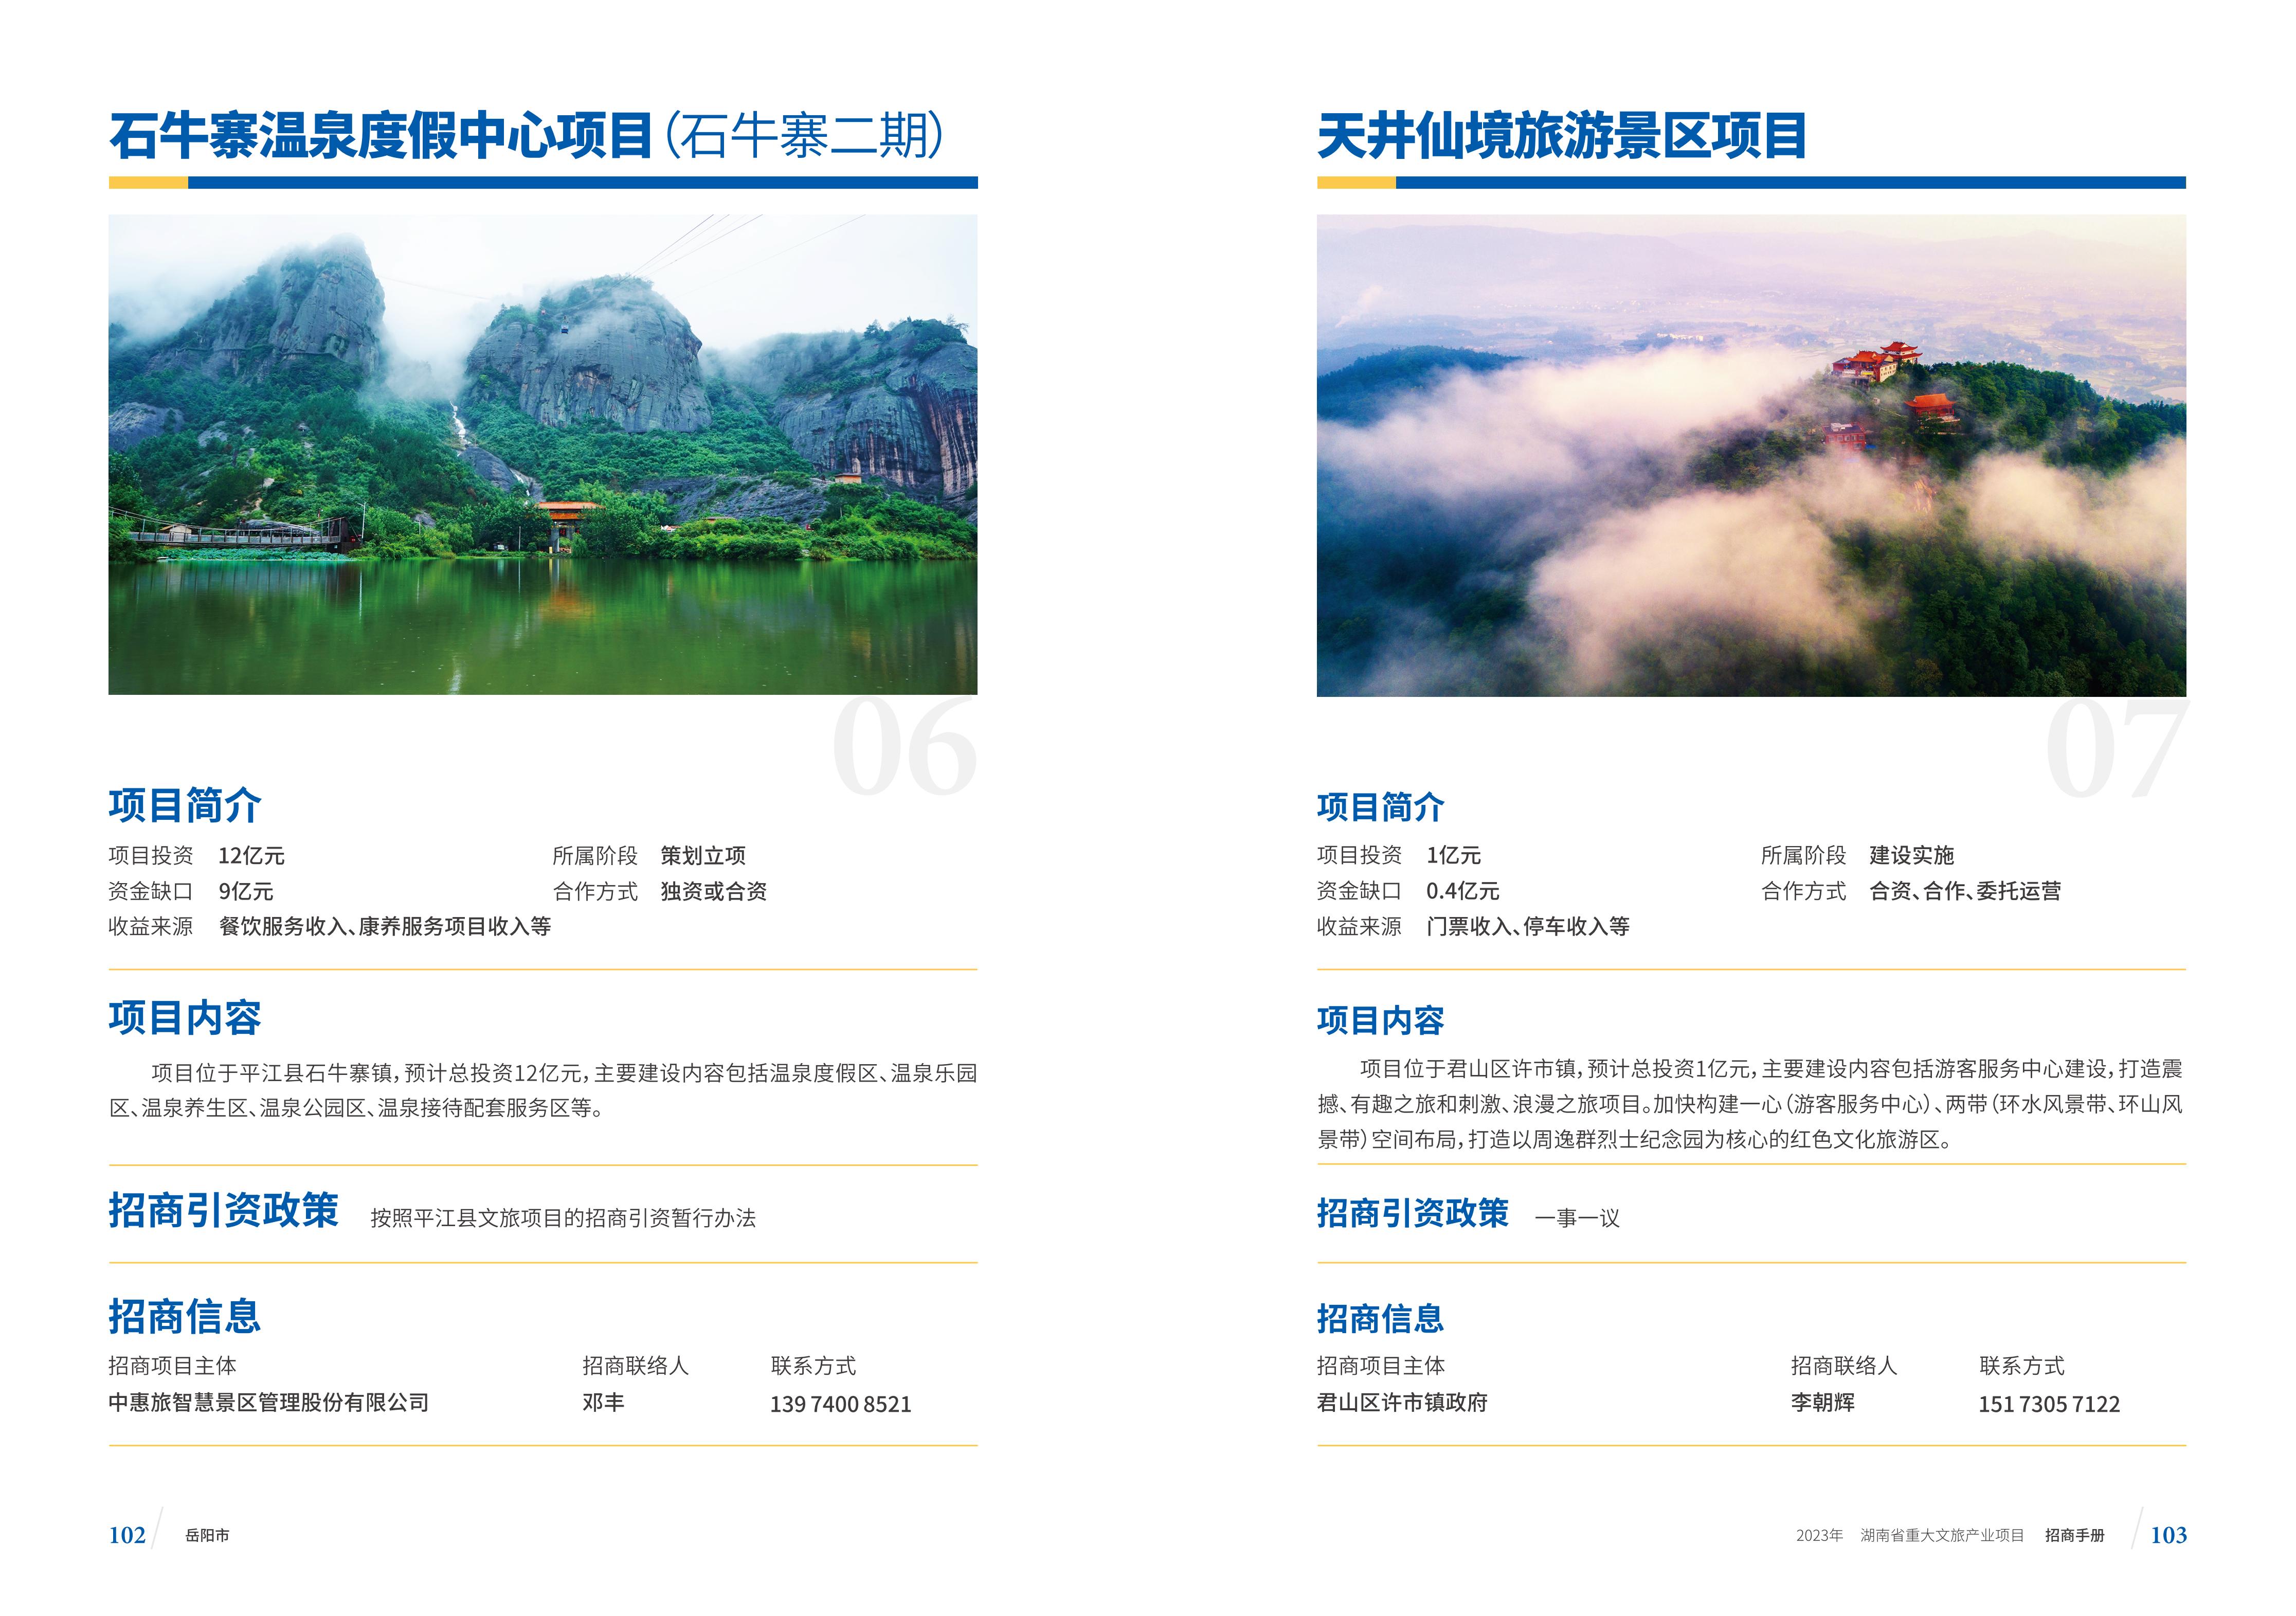 湖南省重大文旅产业项目招手册线上链接版_59.jpg